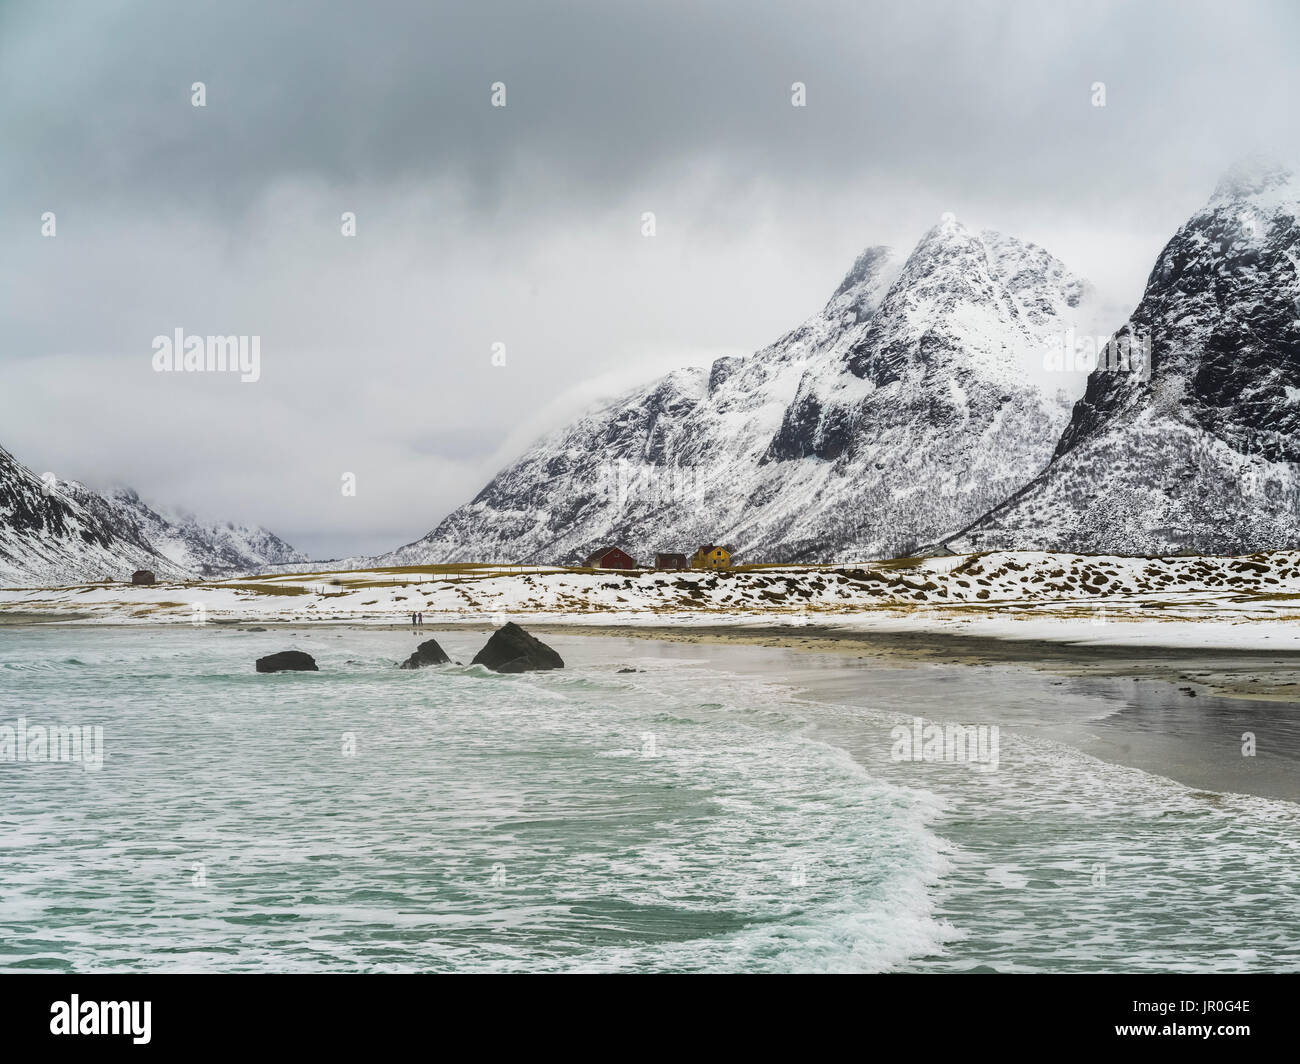 Paysage de la côte et des montagnes couvertes de neige, sous un ciel nuageux ; îles Lofoten, Nordland, Norvège Banque D'Images